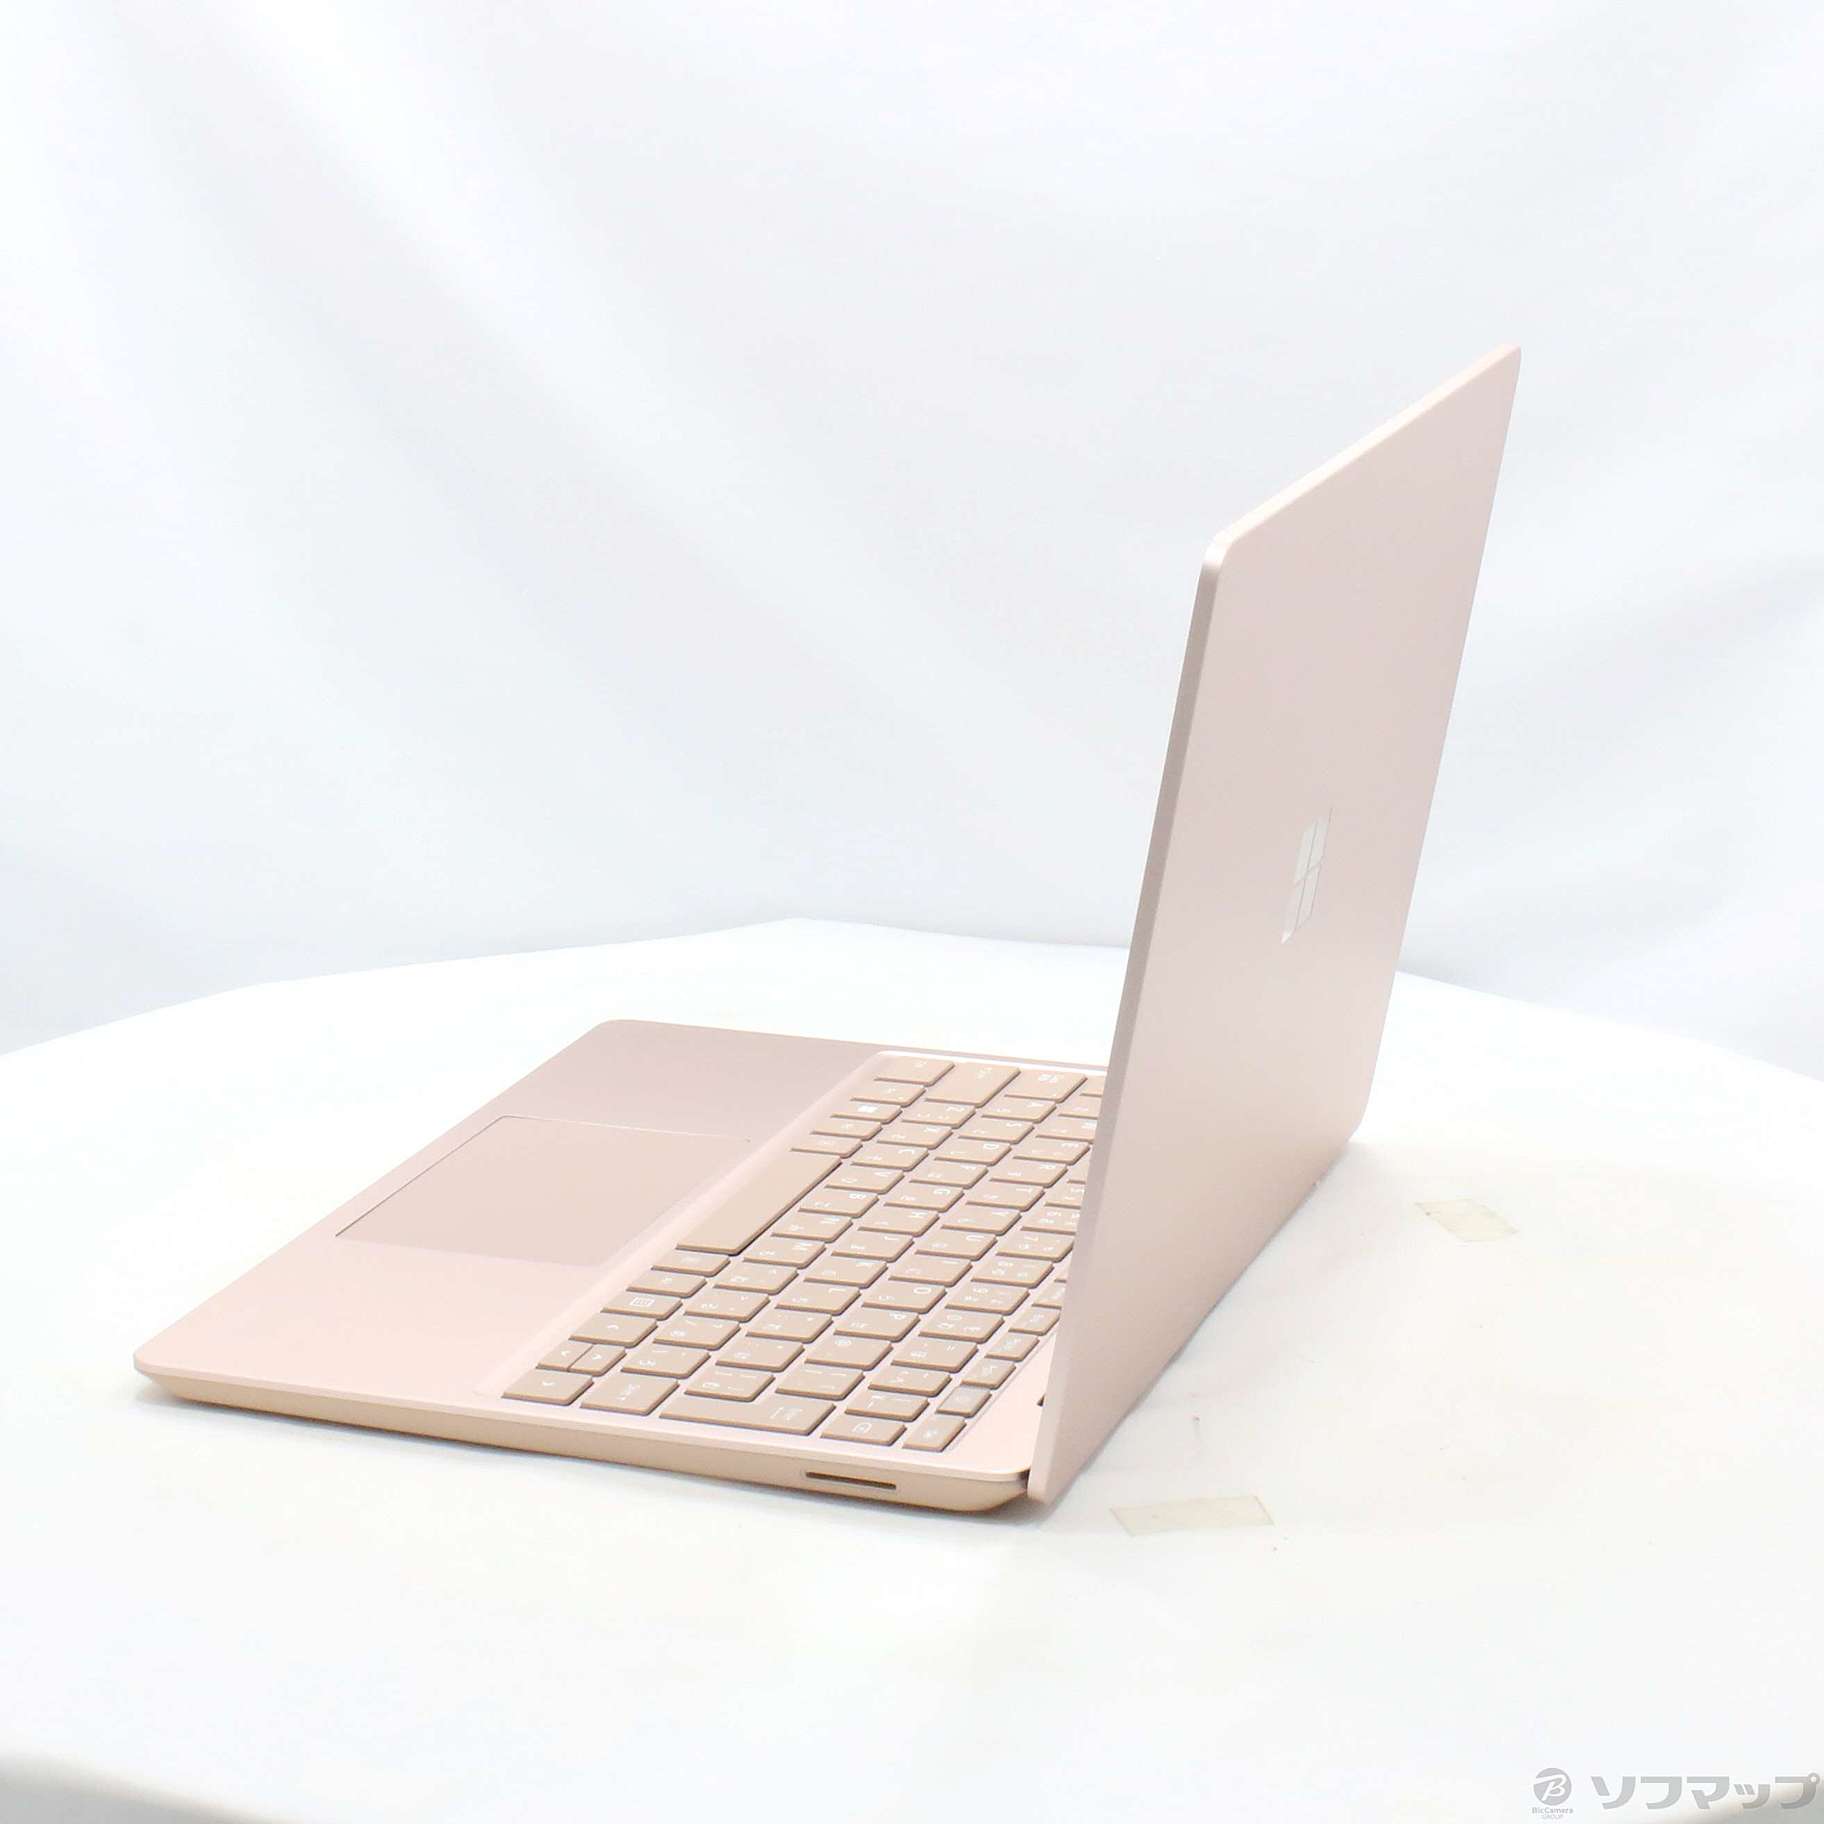 〔展示品〕 Surface Laptop Go 2 〔Core i5／8GB／SSD128GB〕 8QC-00054 サンドストーン